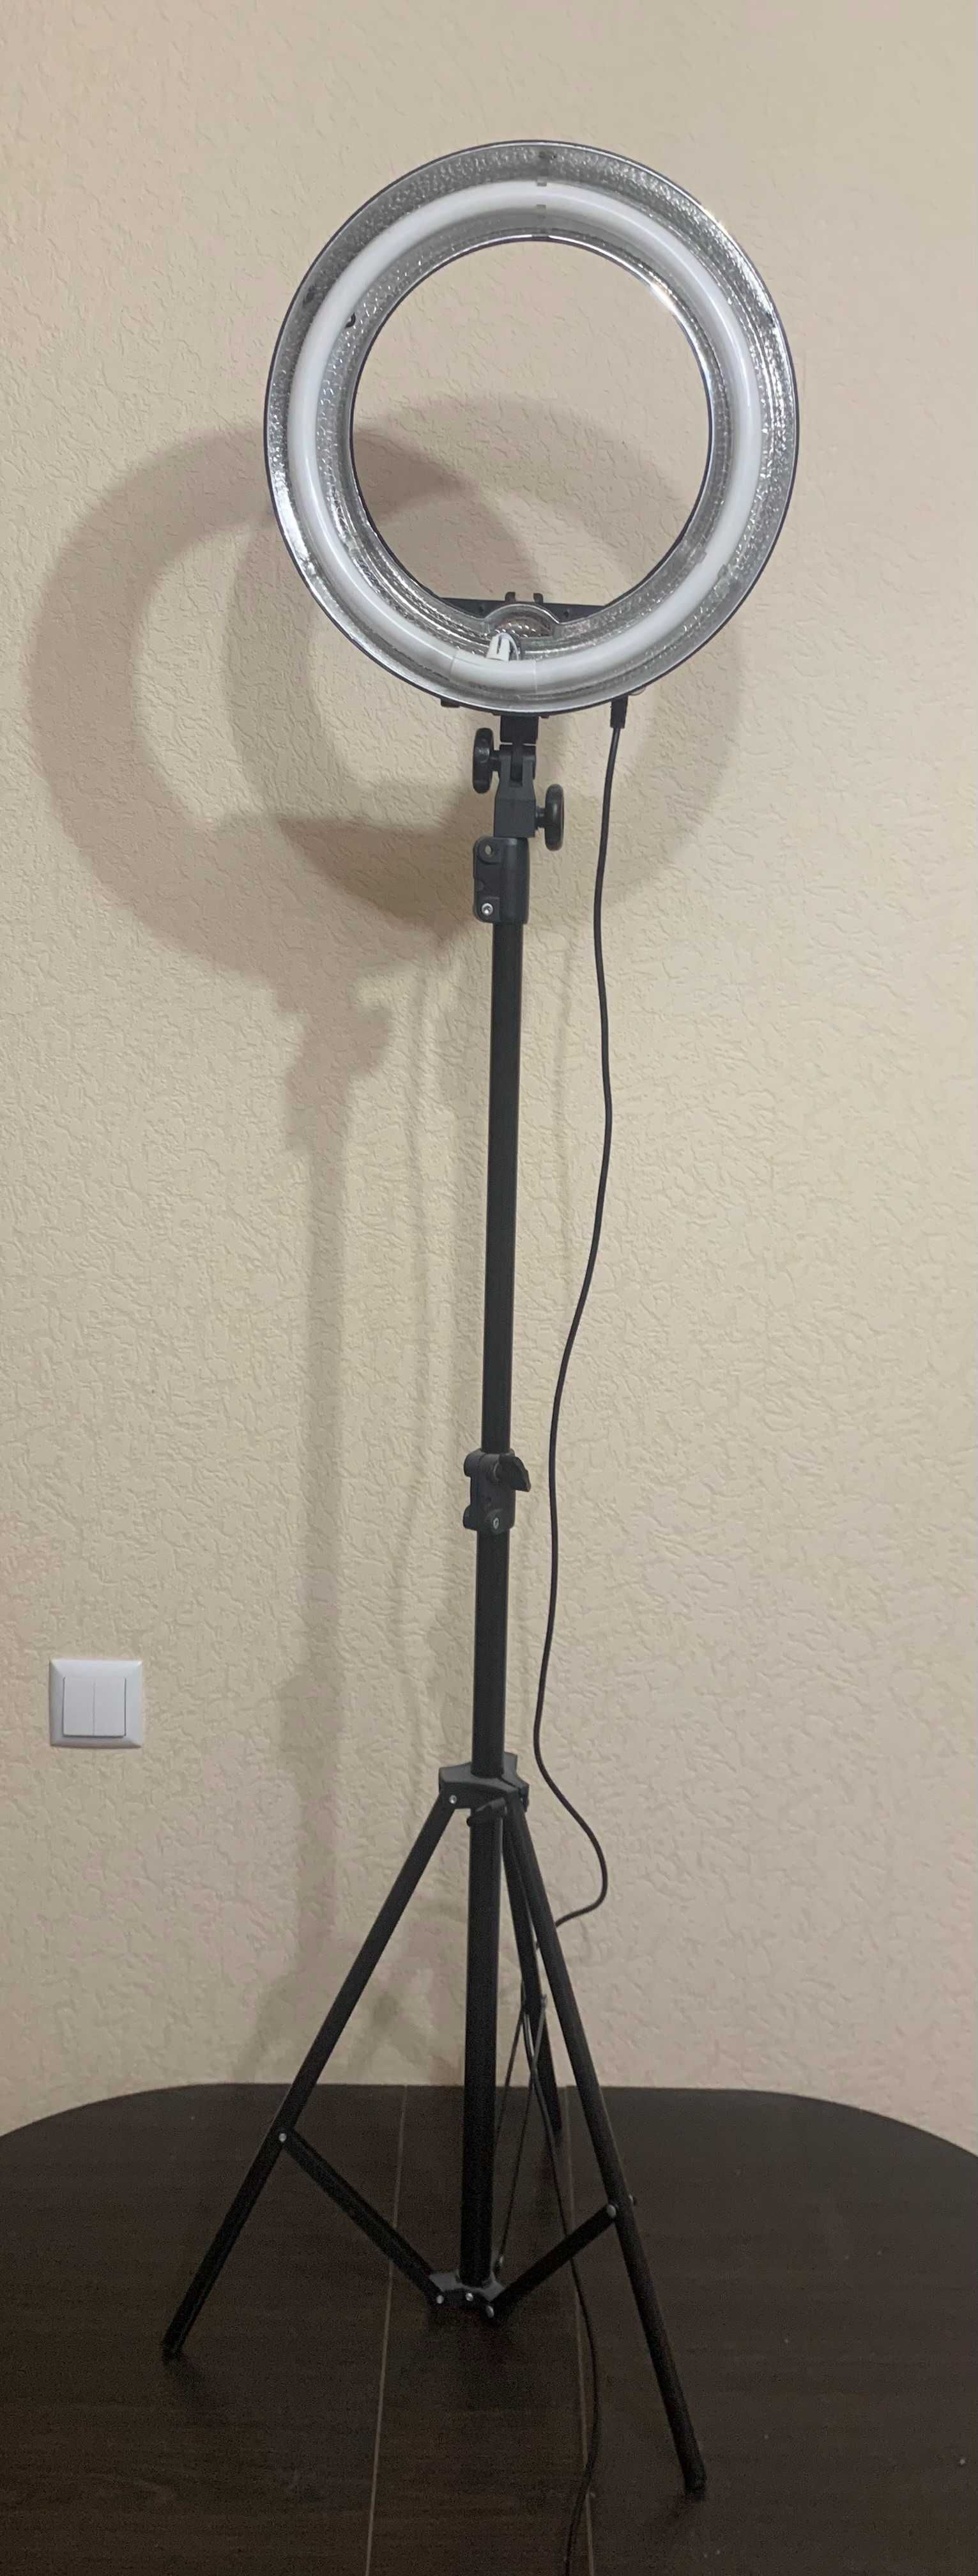 Професійна кільцева лампа для блогерів RL-12 TUBE,висота 2,5 метра,Люм